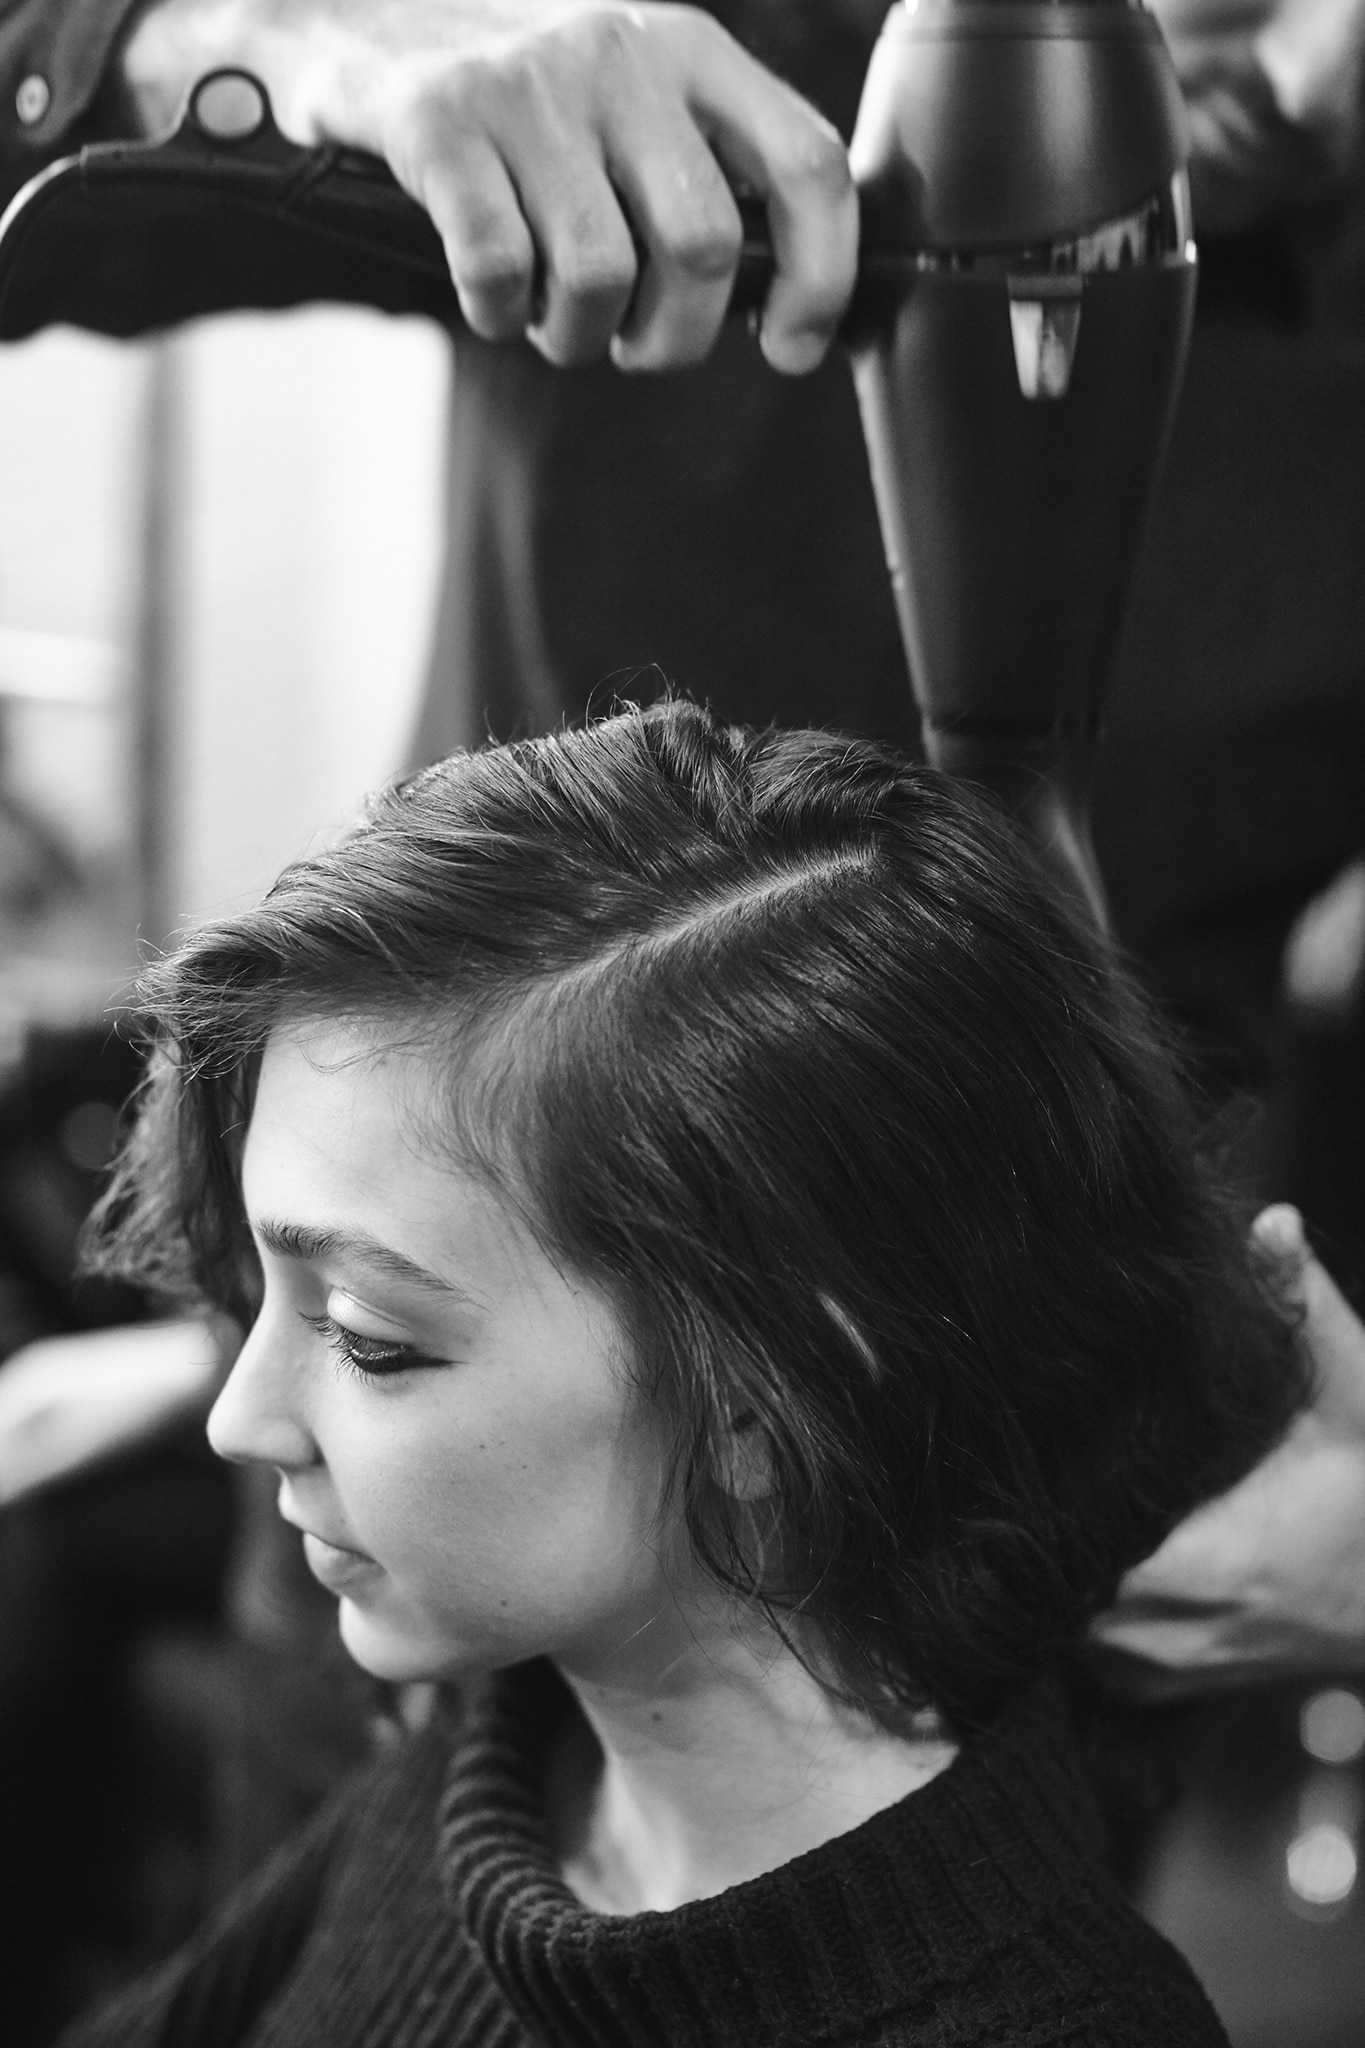 Μοντέλο που κάθεται με τα μαλλιά χωρισμένα και ένας κομμωτής που κρατάει τα μαλλιά της και ένα σεσουάρ